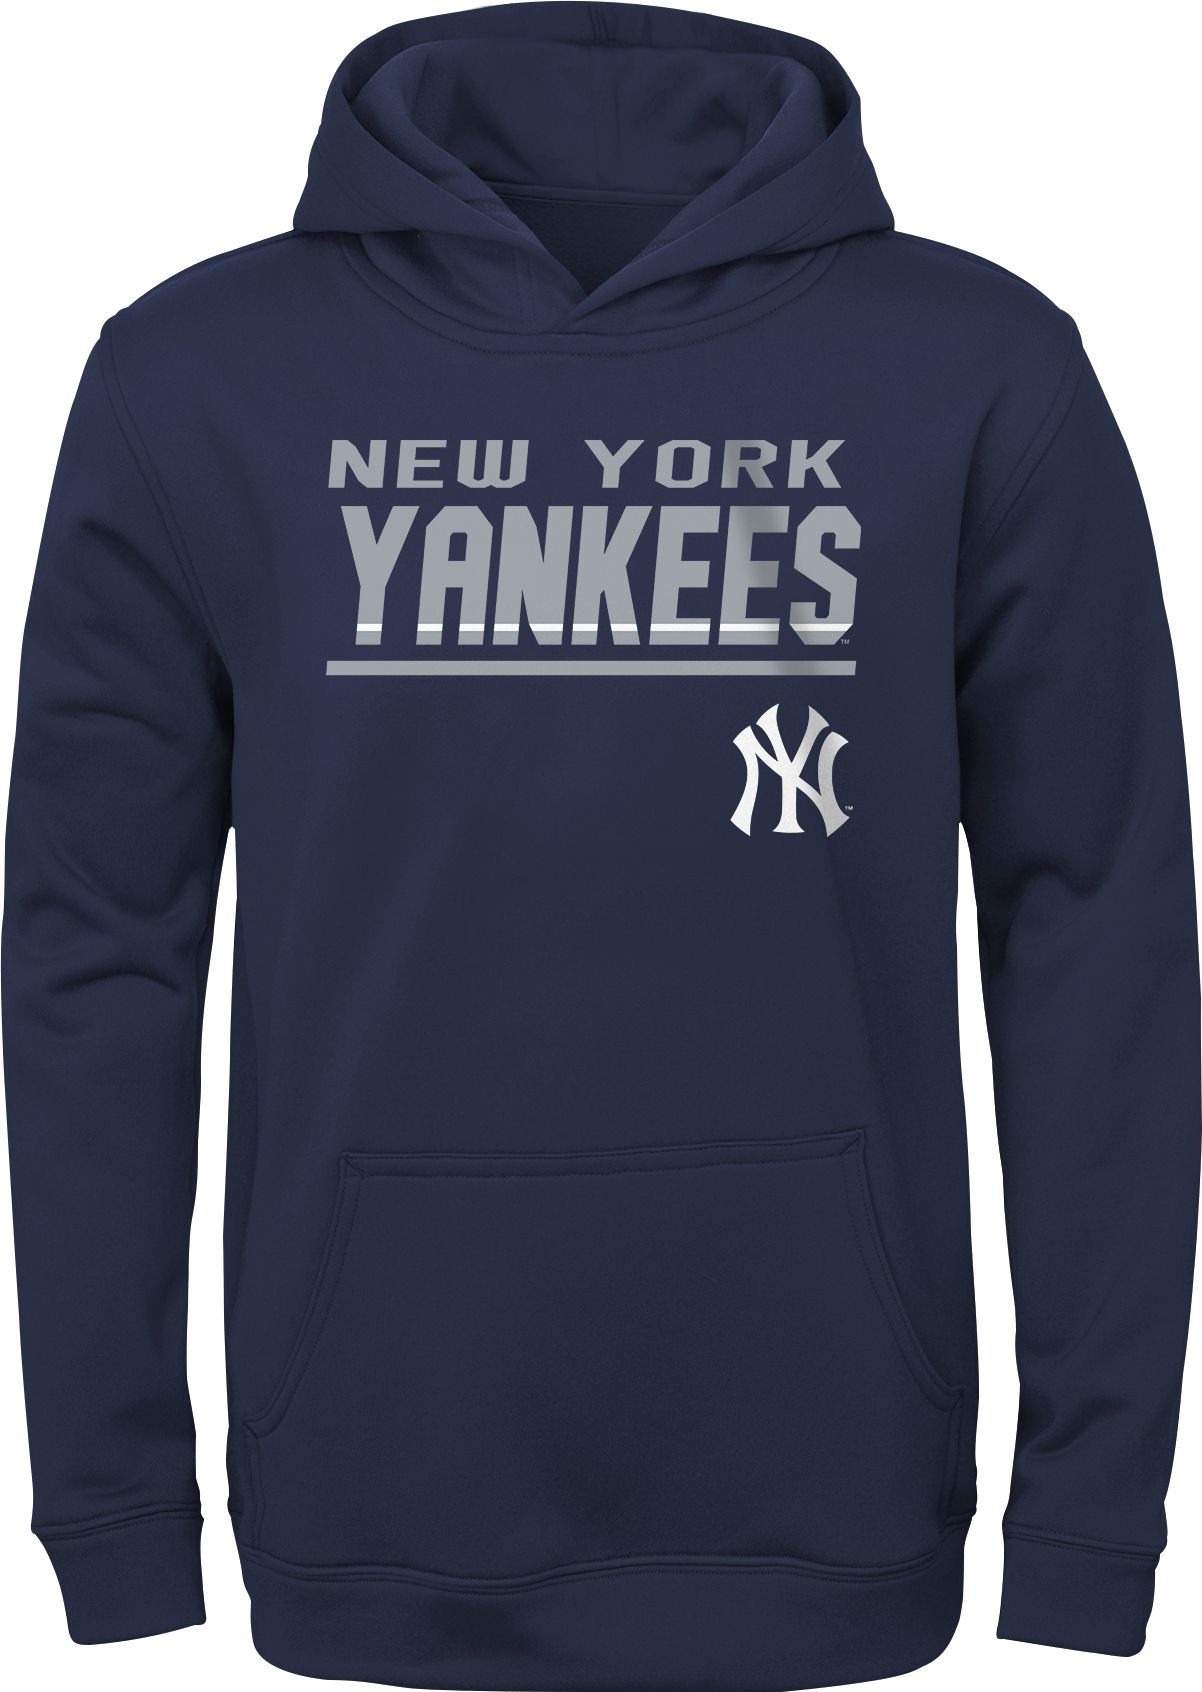 Josh Donaldson New York Yankees Nike Home Replica Player Jersey - White/Navy